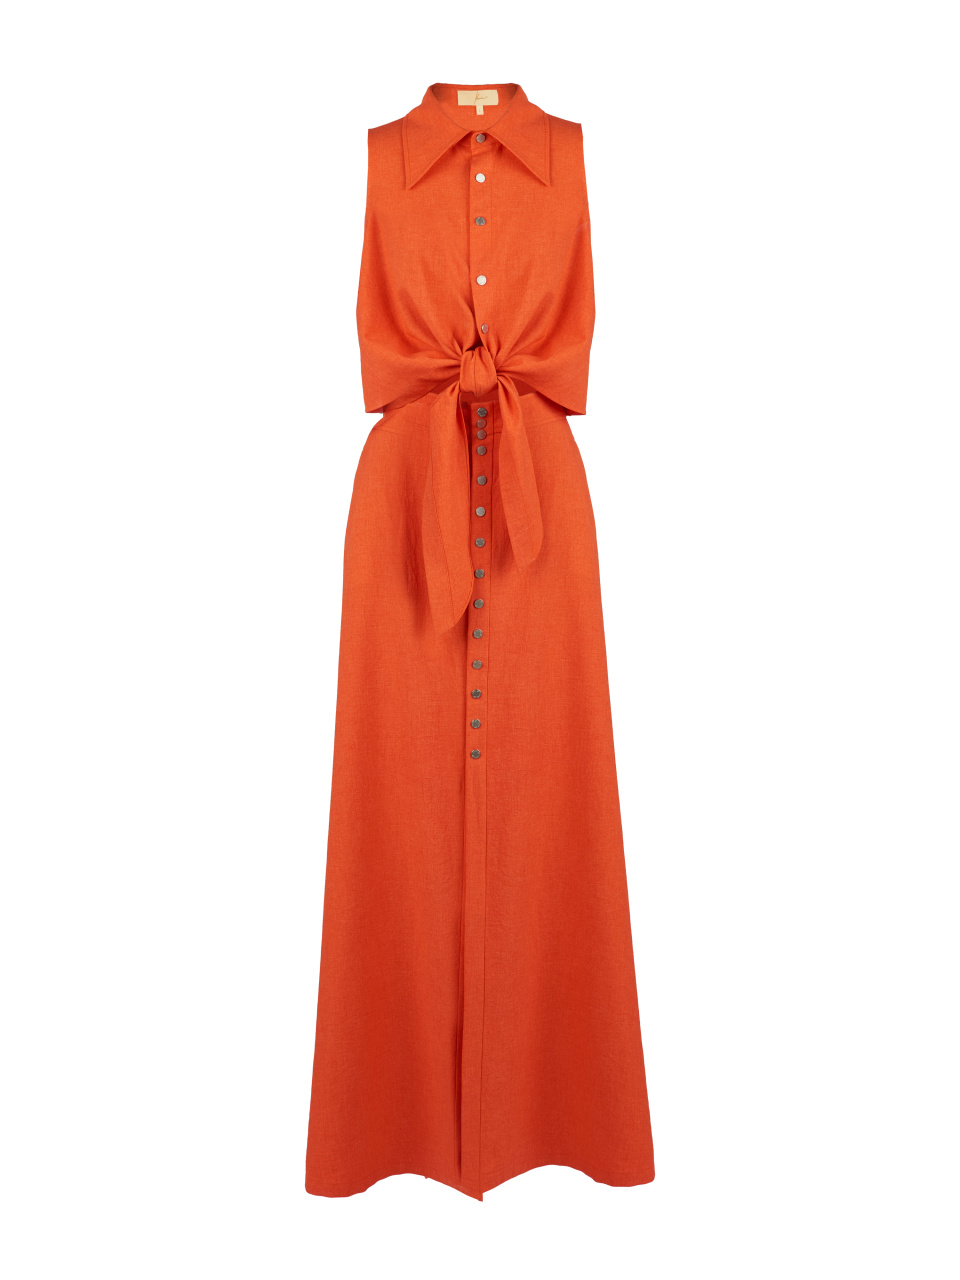 Оранжевый льняной комплект из блузки и юбки-макси, 1